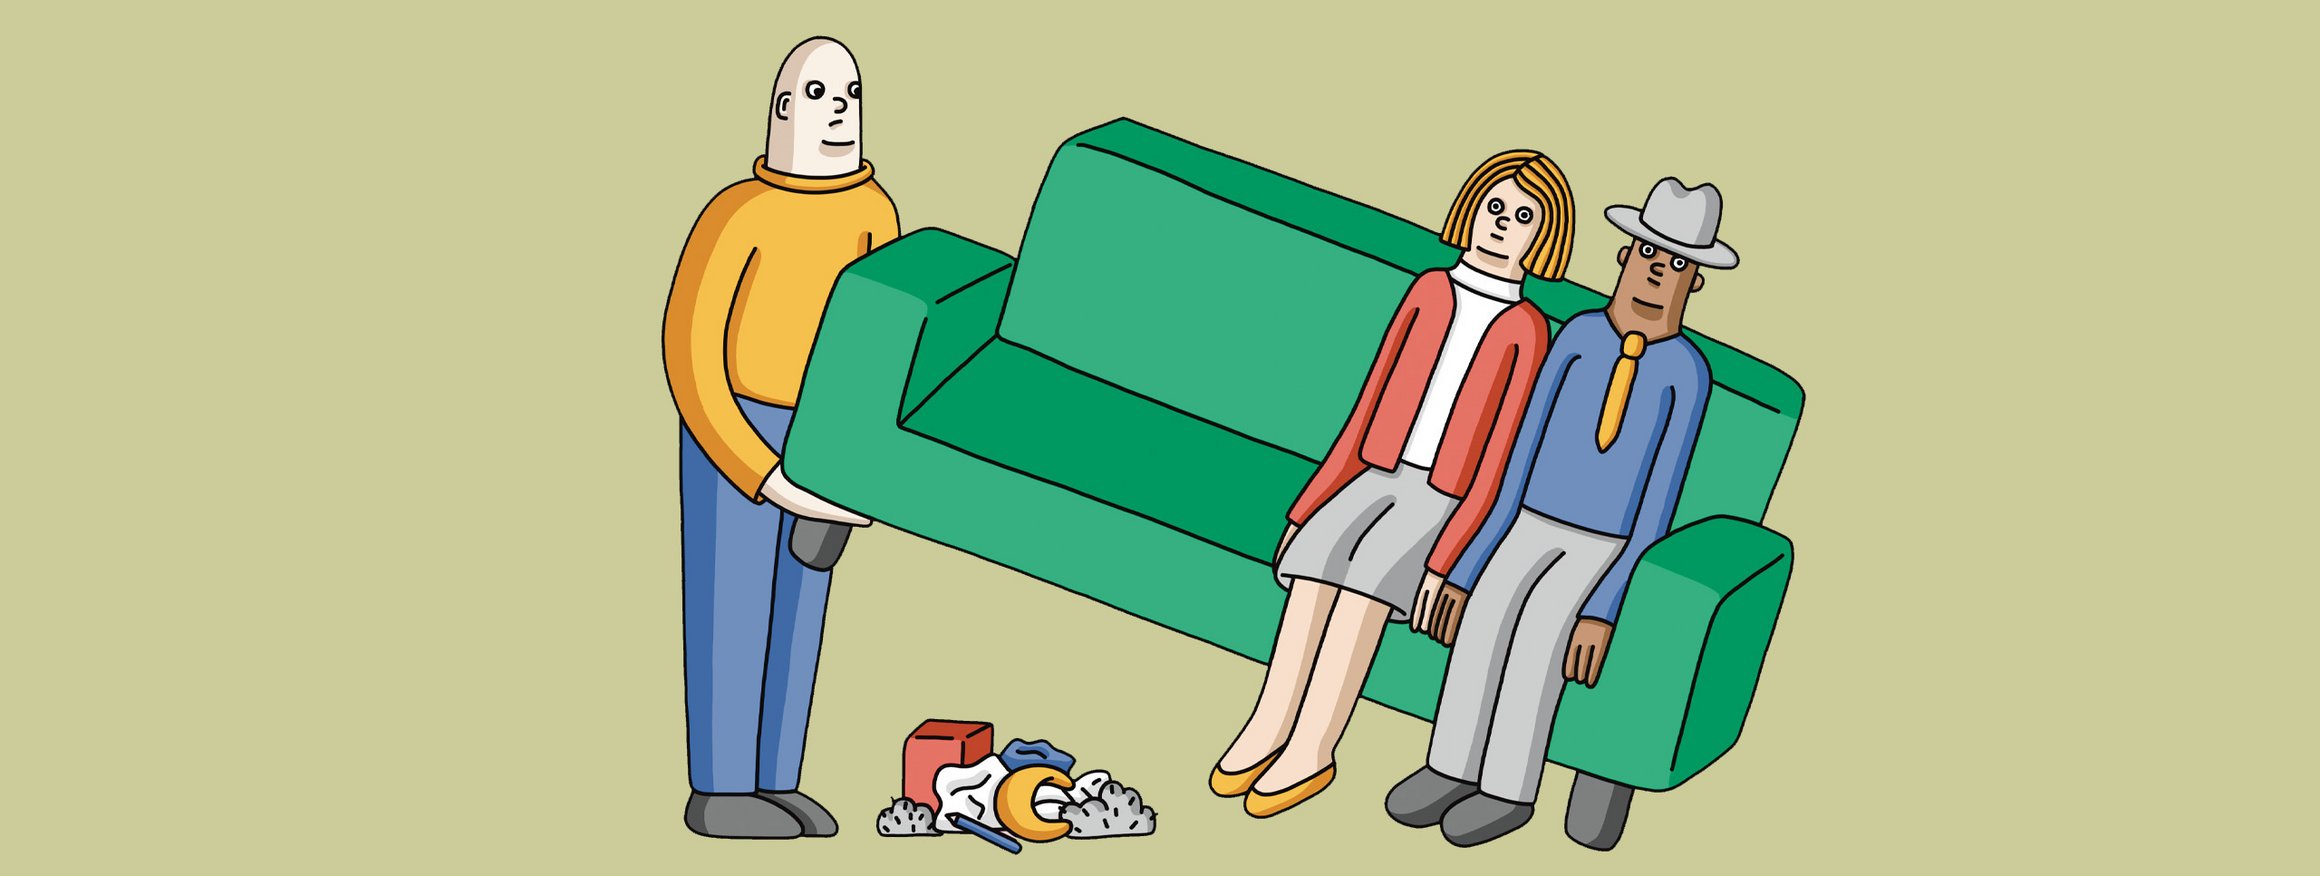 Die Illustration zeigt ein Paar, das auf einem grünen Sofa sitzt, während ein Mann das Sofa hochhebt und es darunter unordentlich ist